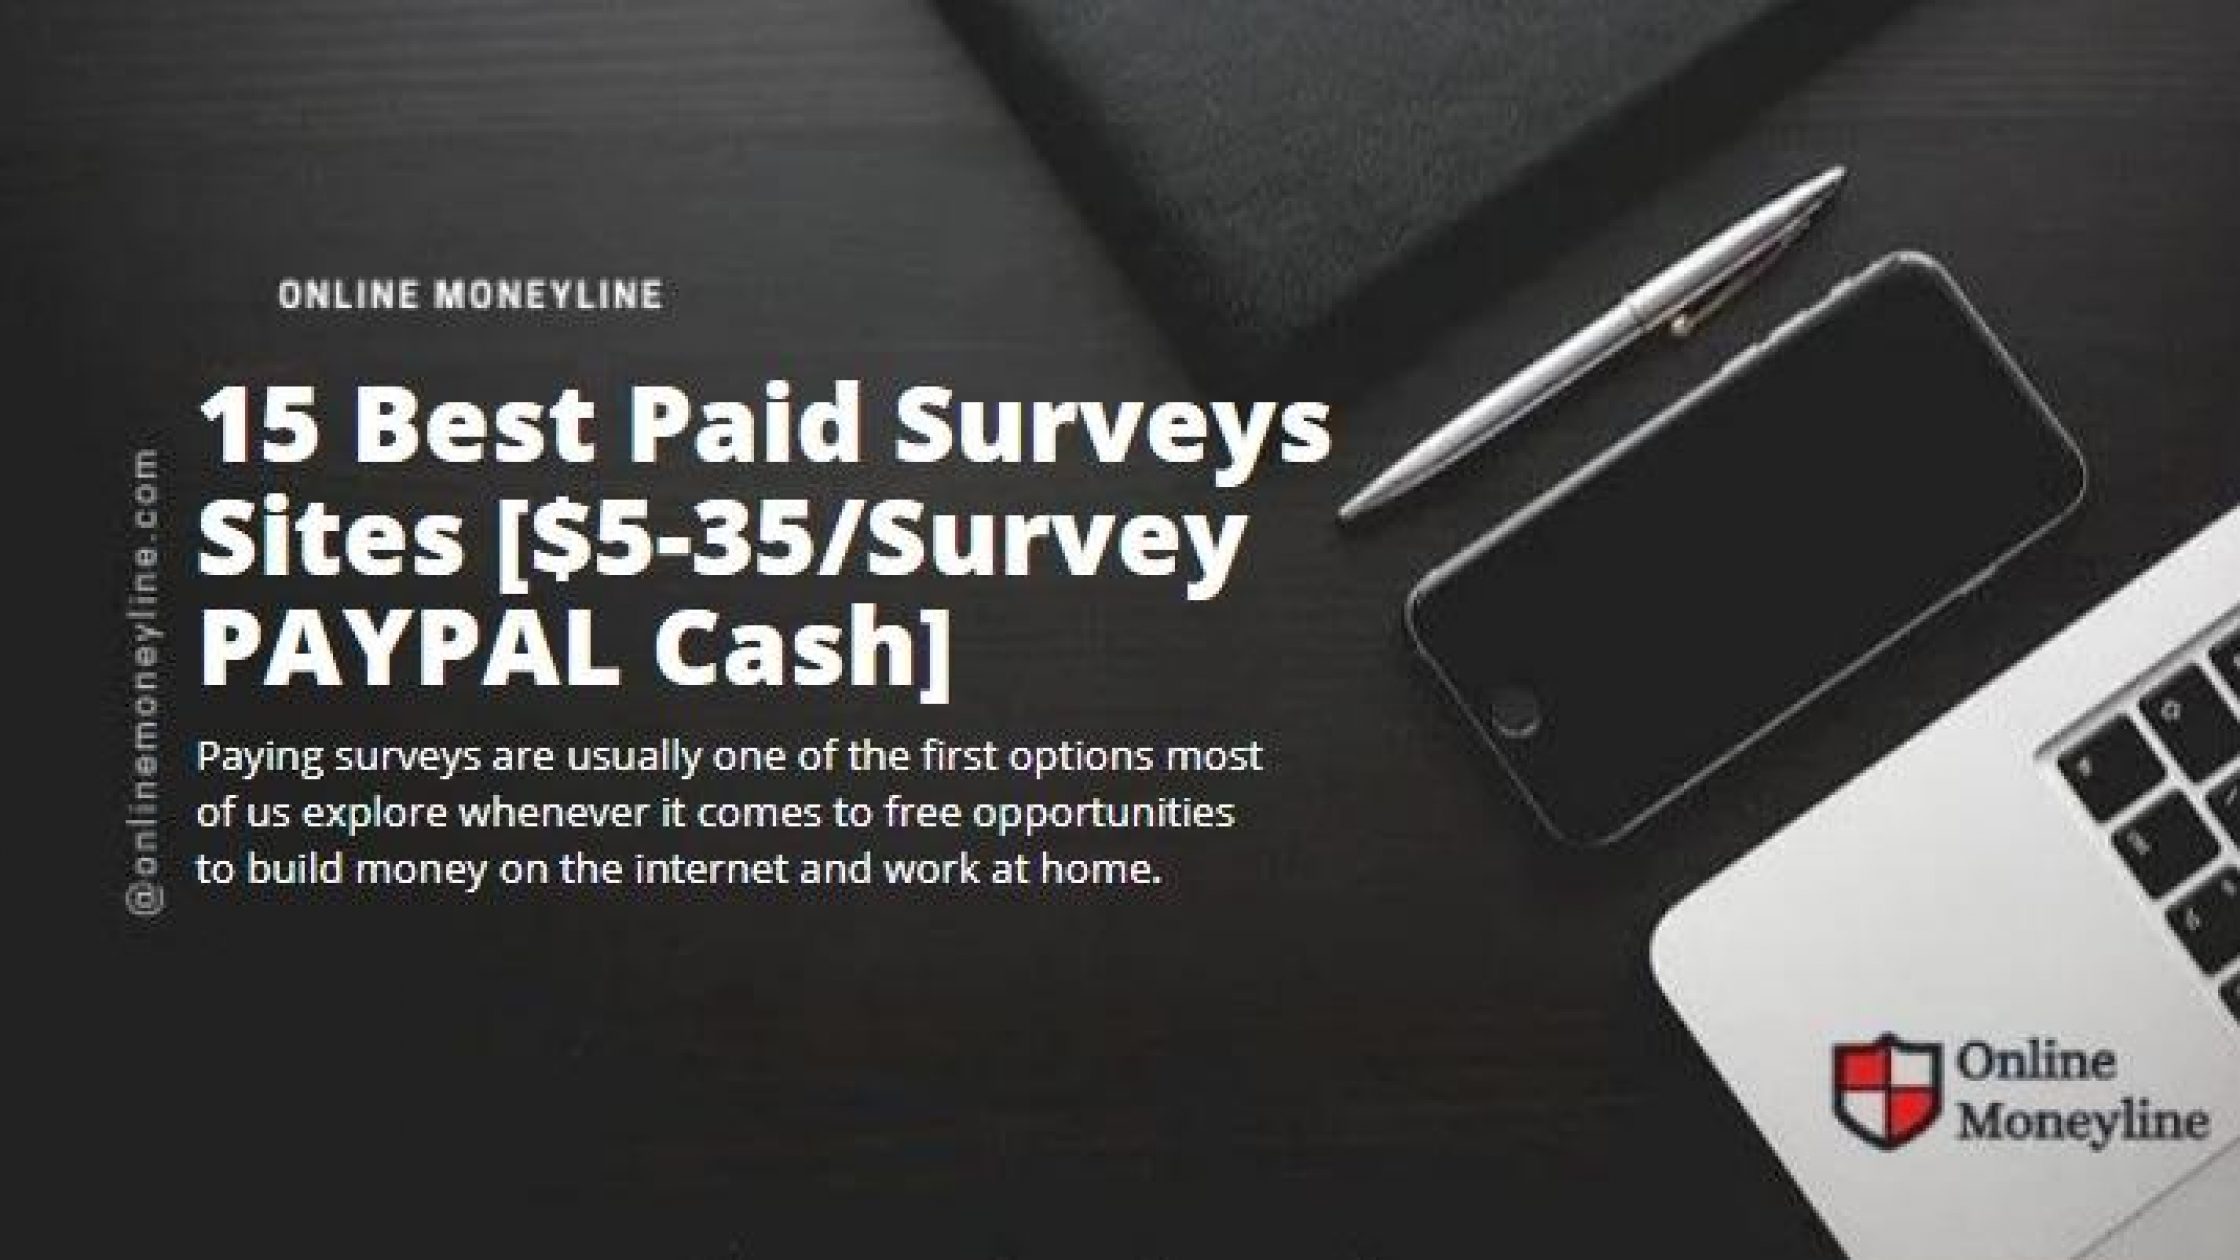 15 Best Paid Surveys Sites [$5-35/Survey PAYPAL Cash]